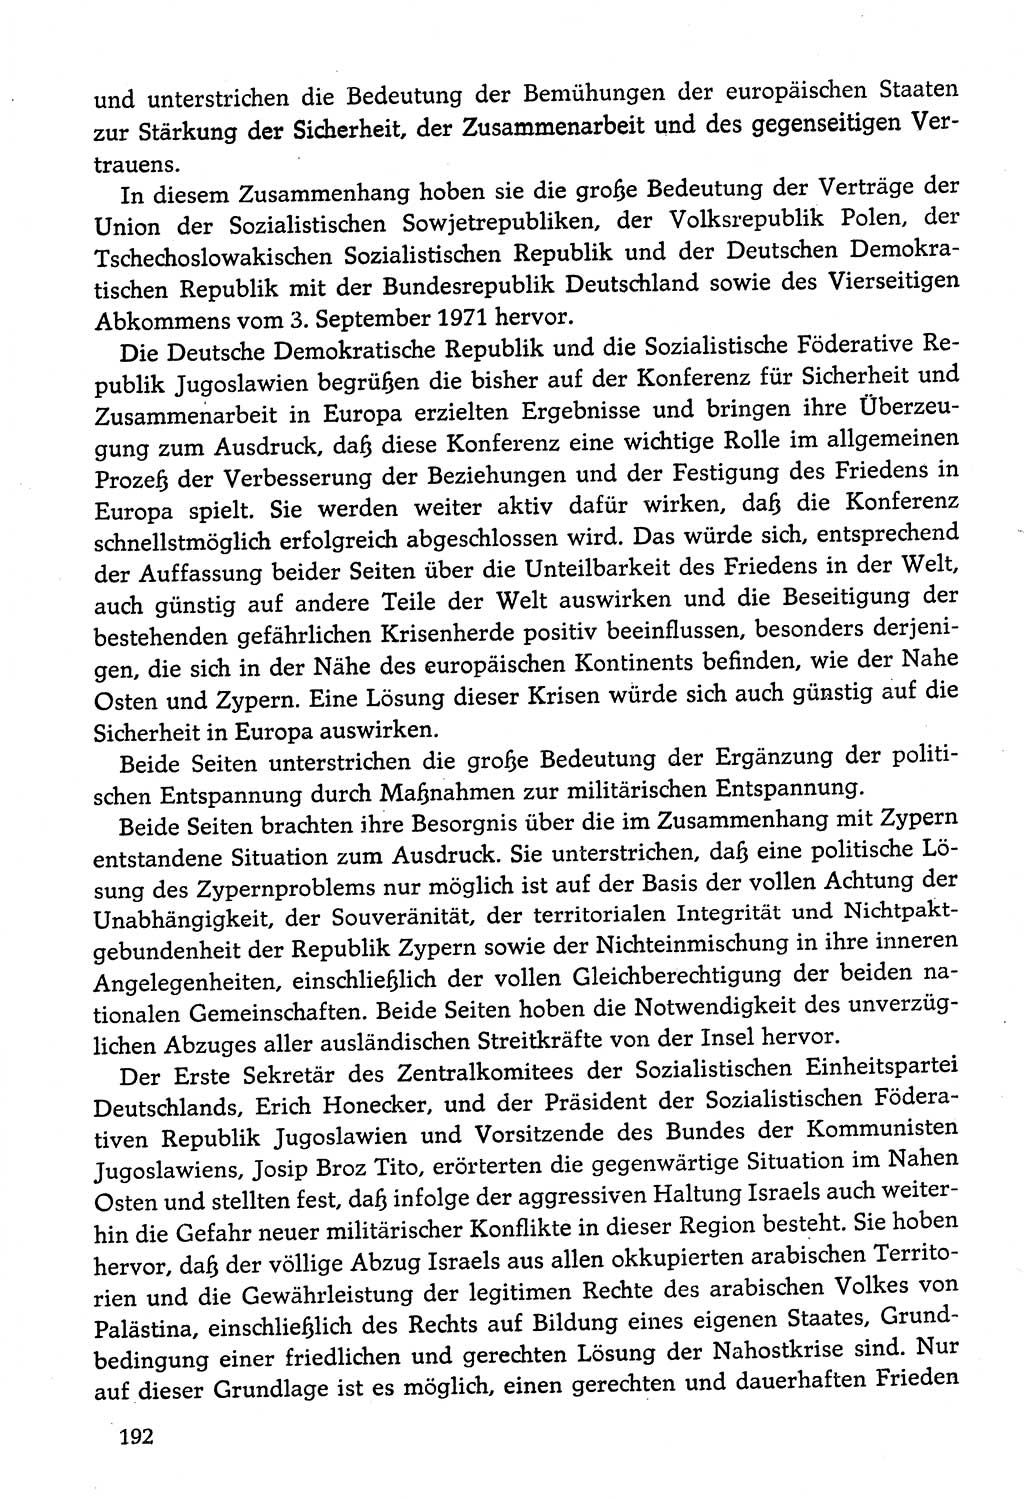 Dokumente der Sozialistischen Einheitspartei Deutschlands (SED) [Deutsche Demokratische Republik (DDR)] 1974-1975, Seite 192 (Dok. SED DDR 1978, Bd. ⅩⅤ, S. 192)